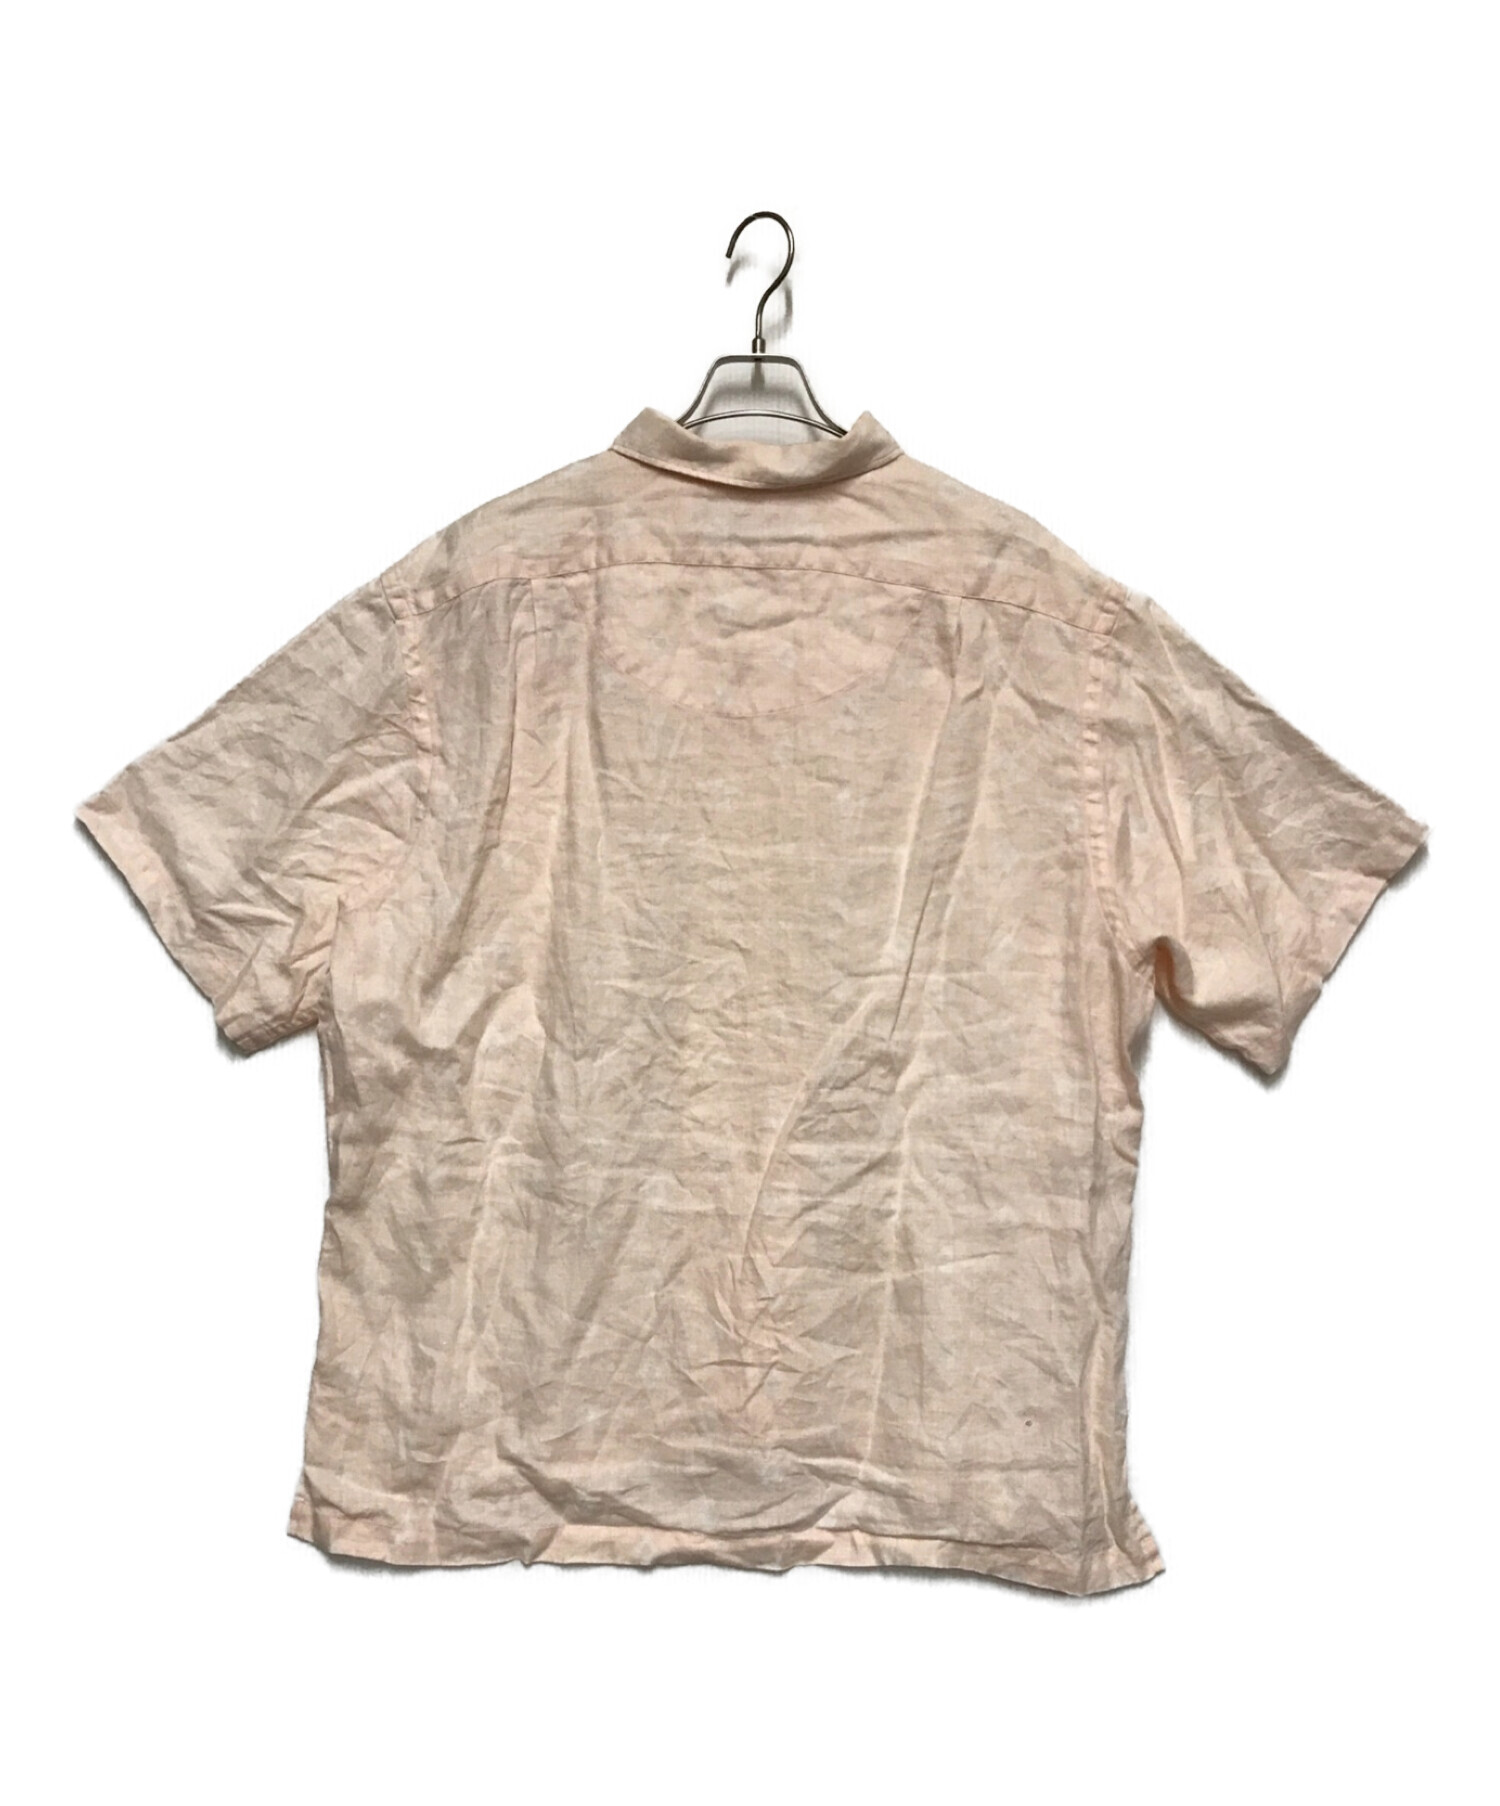 POLO RALPH LAUREN (ポロ・ラルフローレン) 【OLD】総柄リネンオープンカラーシャツ ベージュ サイズ:XL